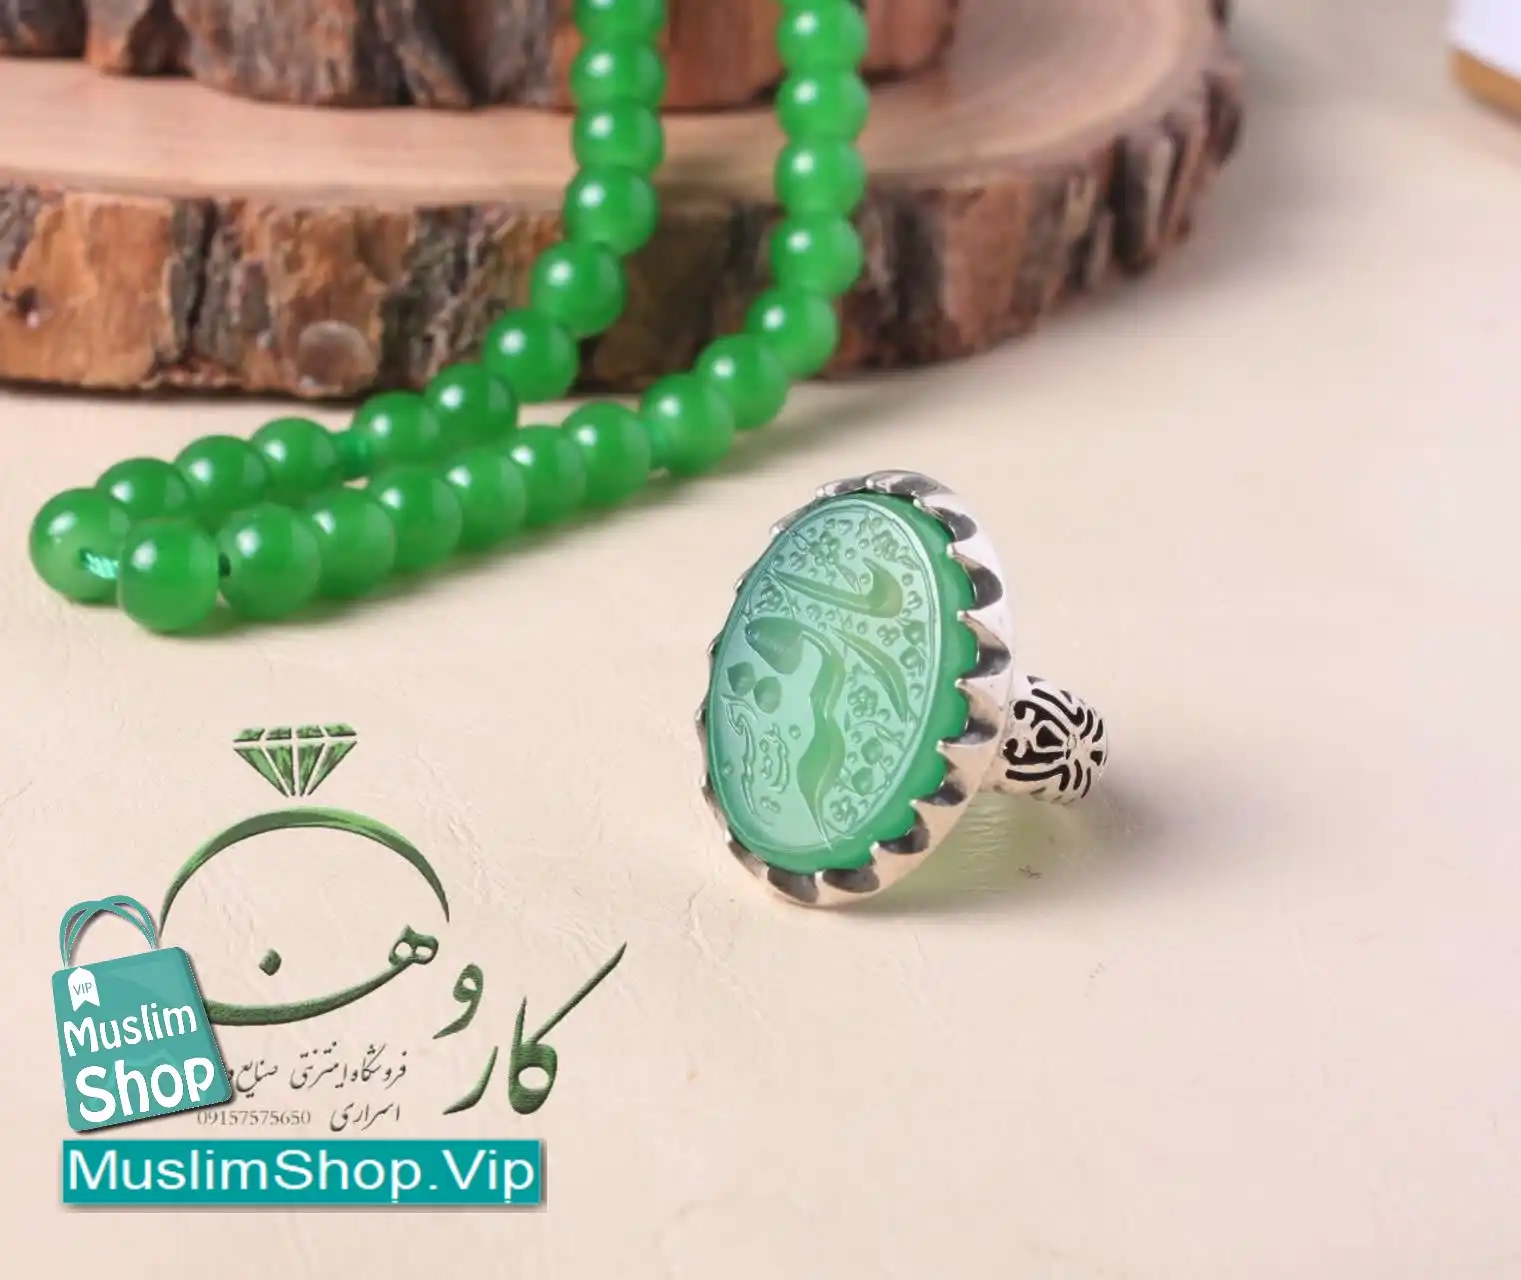 MuslimShop-Ring-Muslim-sterling-silver-gemstone-Green-Yemeni-emrald-agate